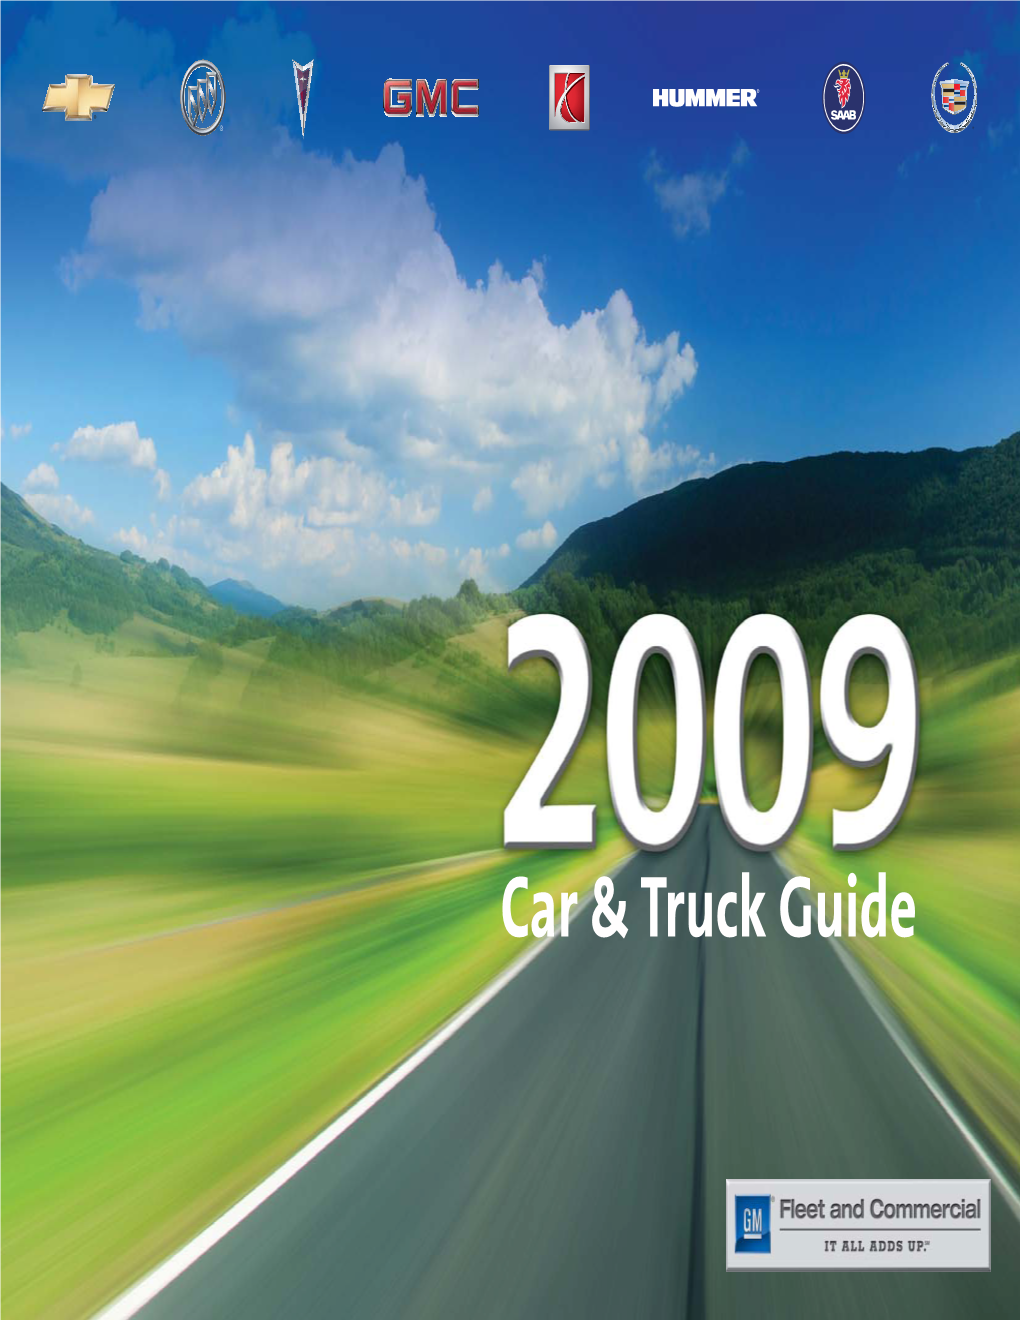 Car & Truck Guide